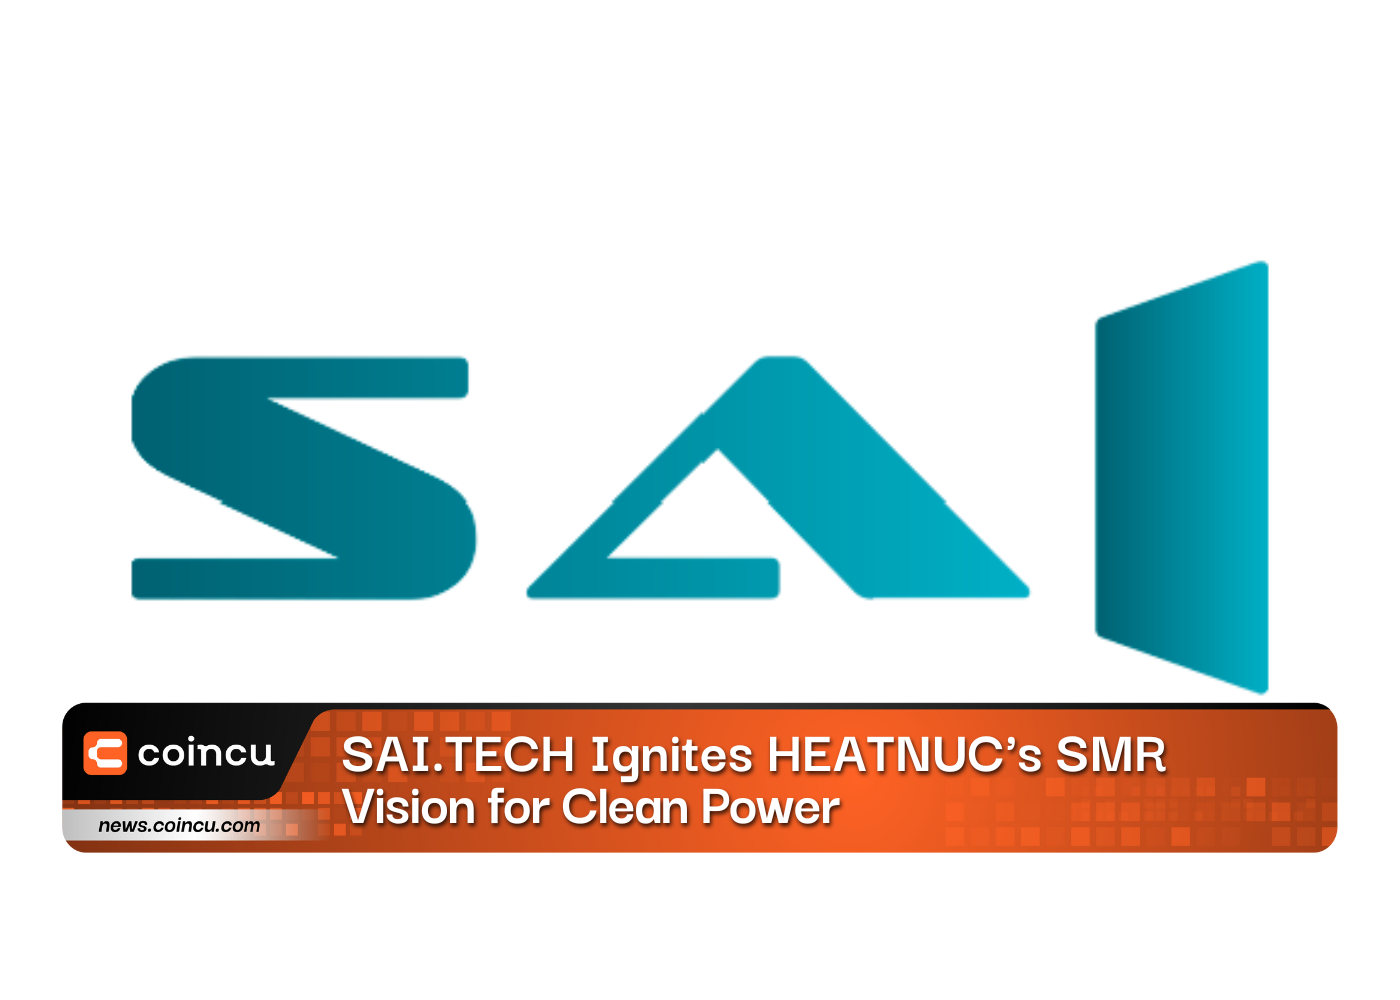 SAI.TECH Ignites HEATNUC’s SMR Vision for Clean Power